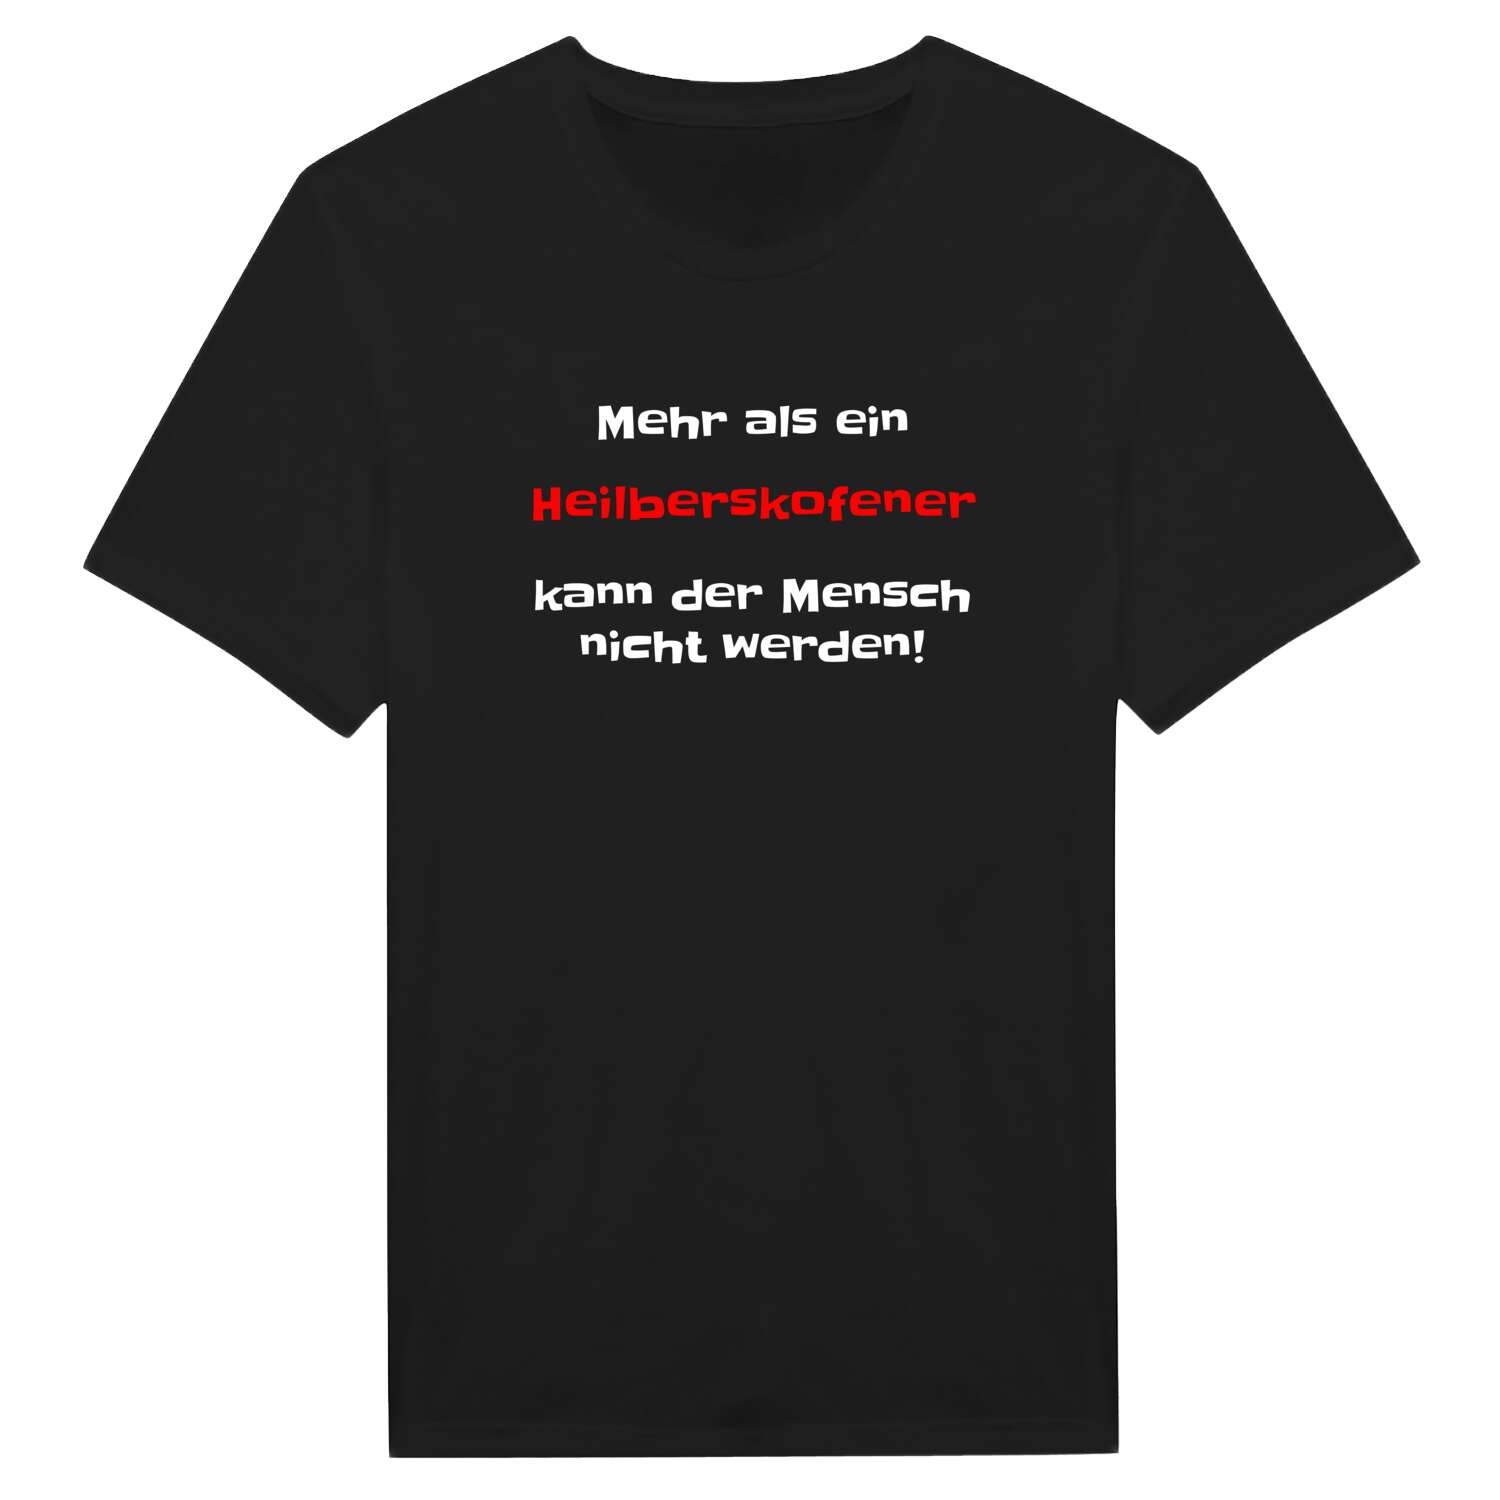 Heilberskofen T-Shirt »Mehr als ein«